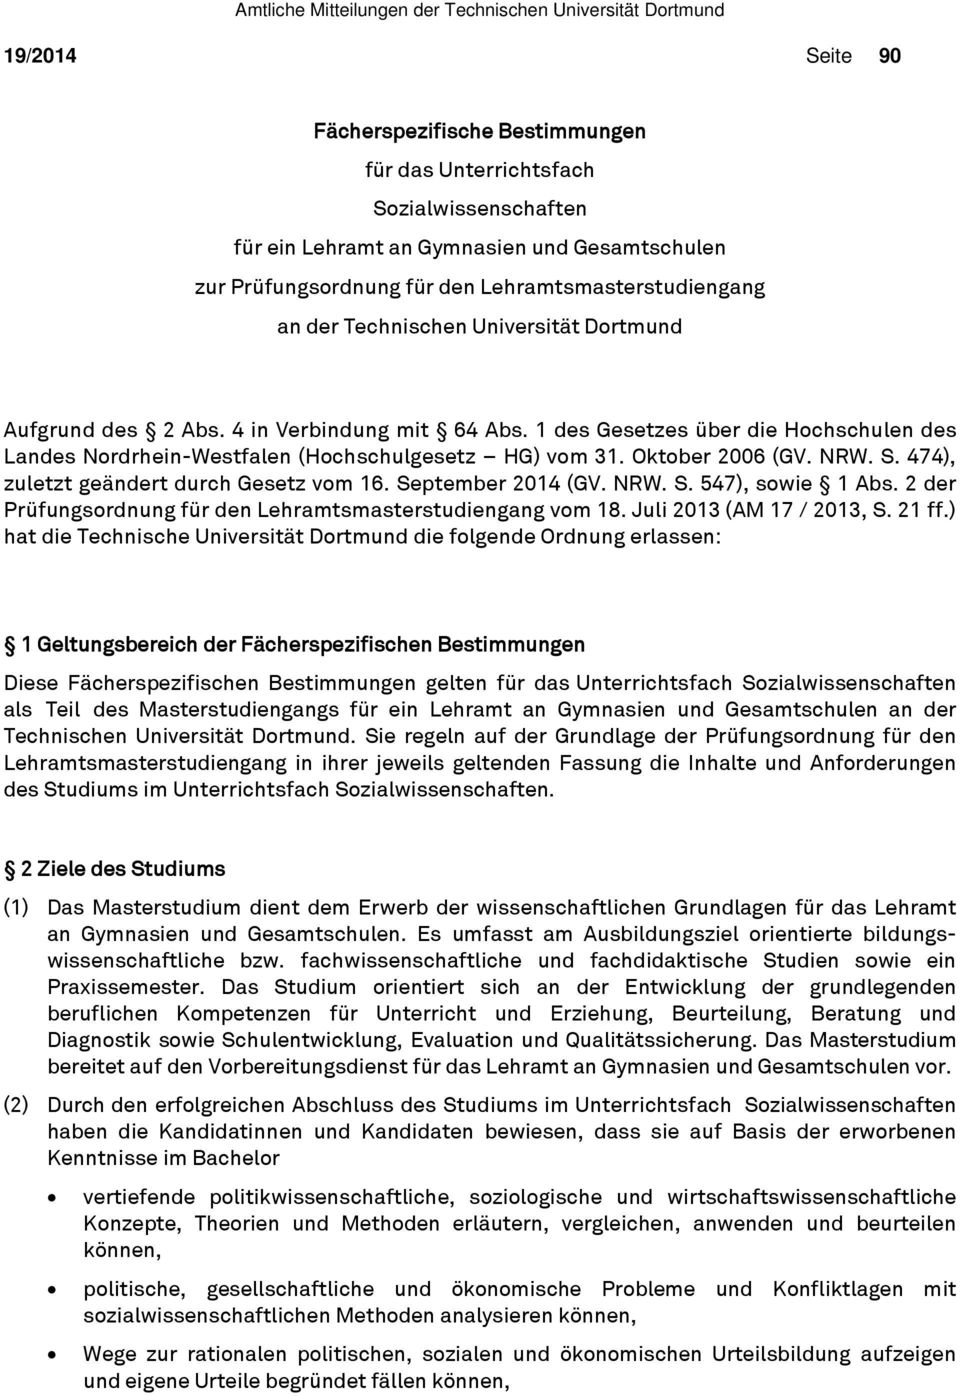 NRW. S. 474), zuletzt geändert durch Gesetz vom 16. September 2014 (GV. NRW. S. 547), sowie 1 Abs. 2 der Prüfungsordnung für den Lehramtsmasterstudiengang vom 18. Juli 2013 (AM 17 / 2013, S. 21 ff.